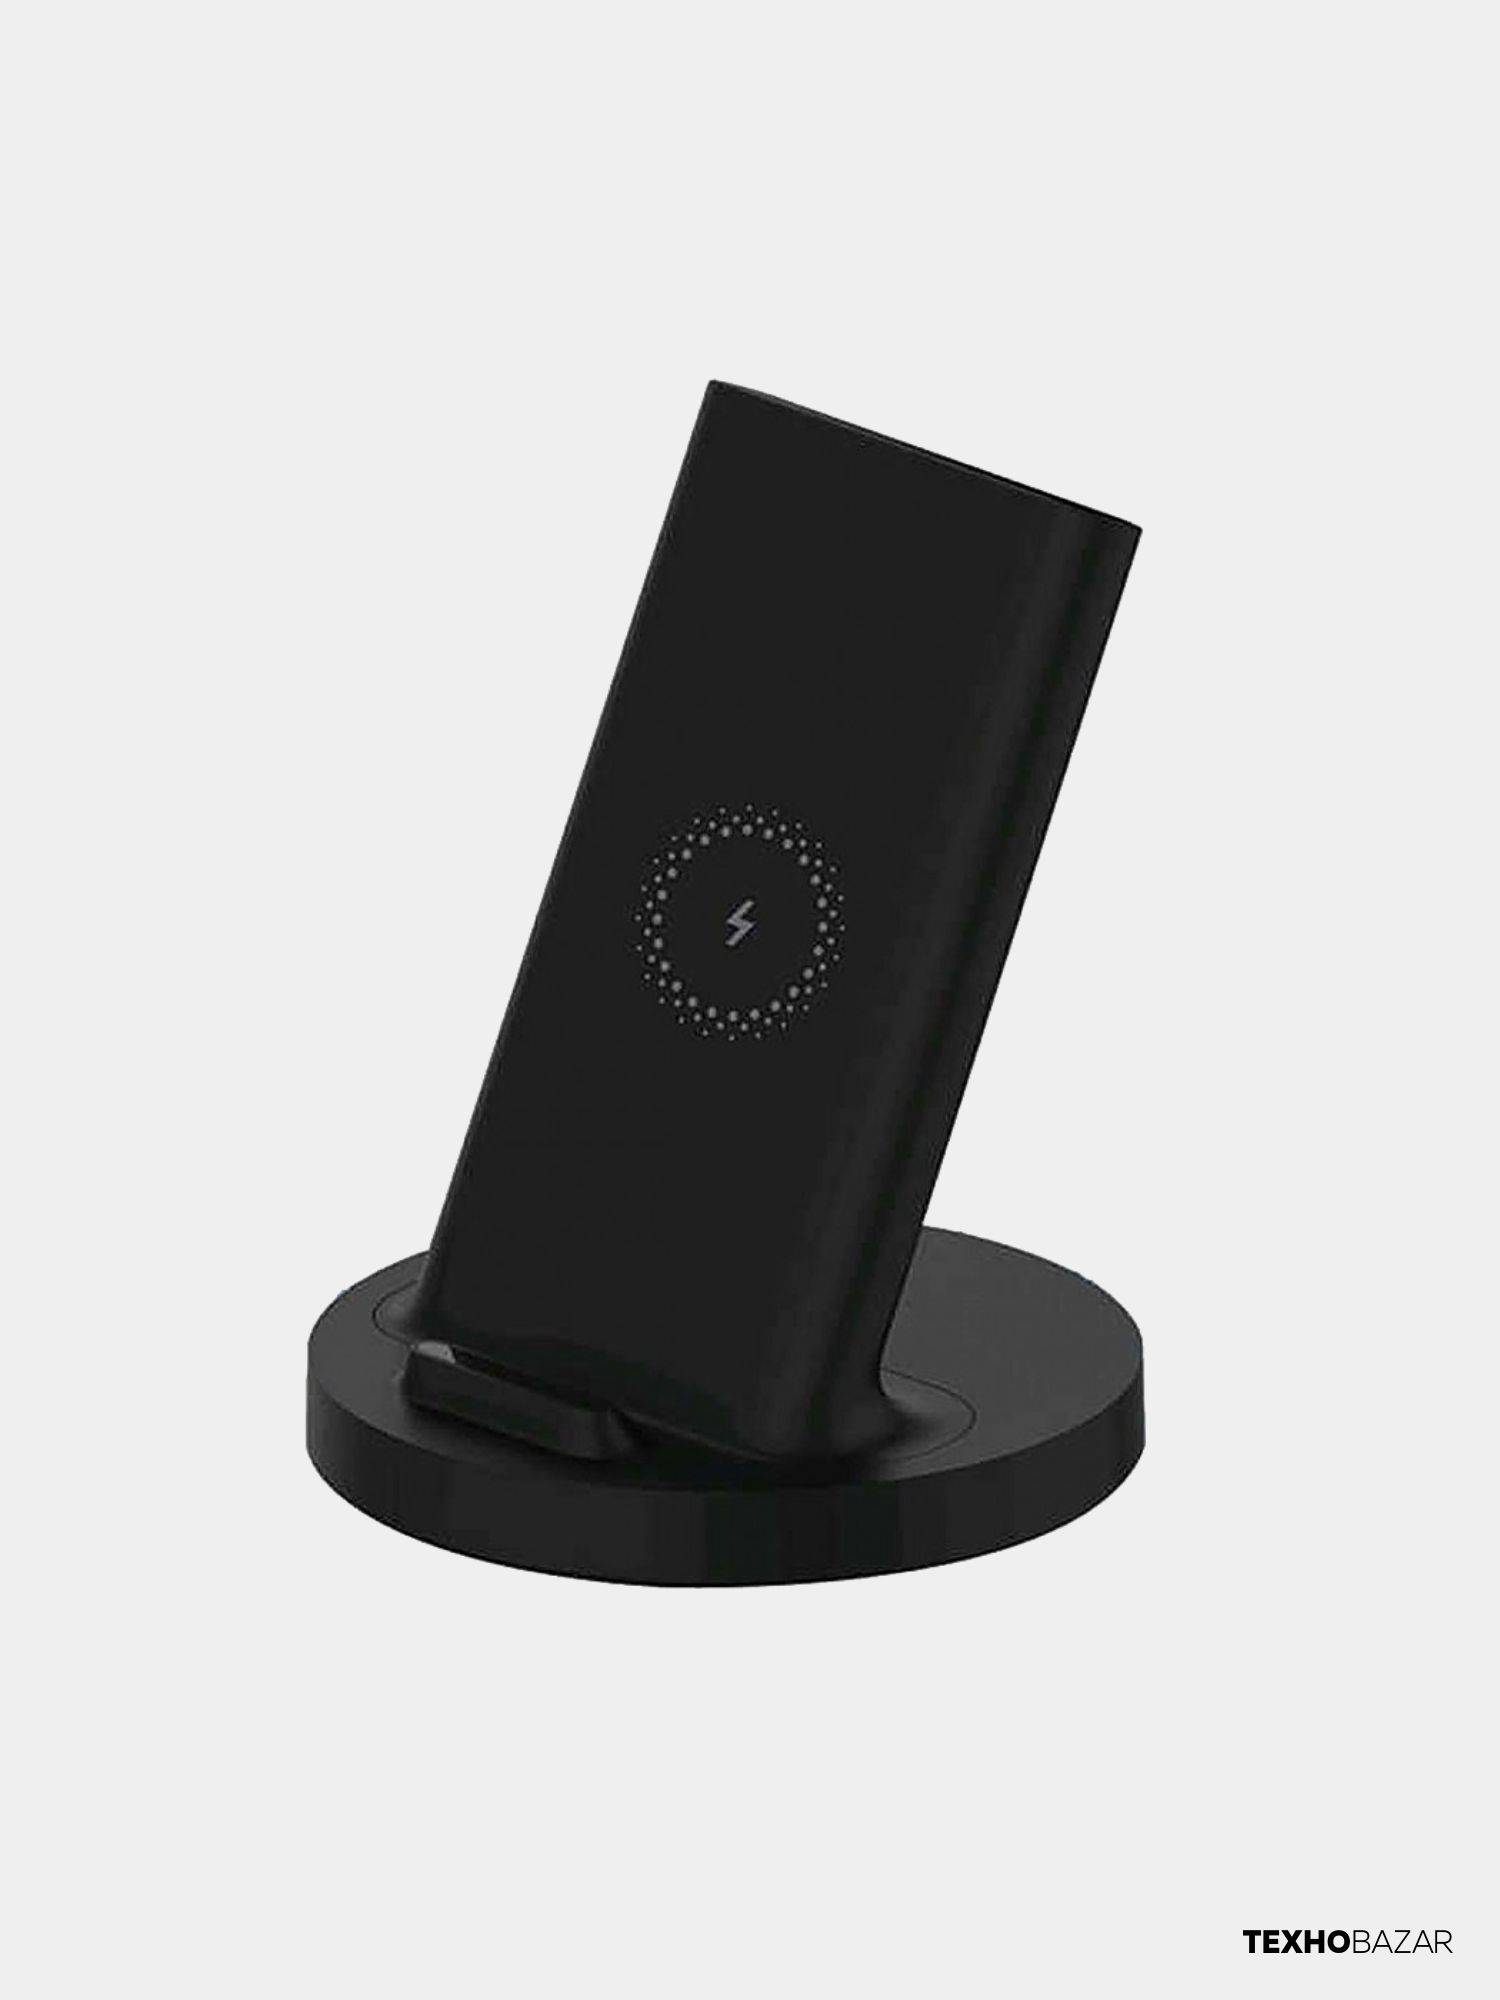 Xiaomi 20w wireless stand. Xiaomi mi 20w Wireless Charging Stand. Беспроводная сетевая зарядка Xiaomi mi 20w Wireless Charging Stand. Беспроводная зарядка Xiaomi Wireless Charger 20w. Xiaomi mi 20w Wireless Charging Stand (gds4145gl).